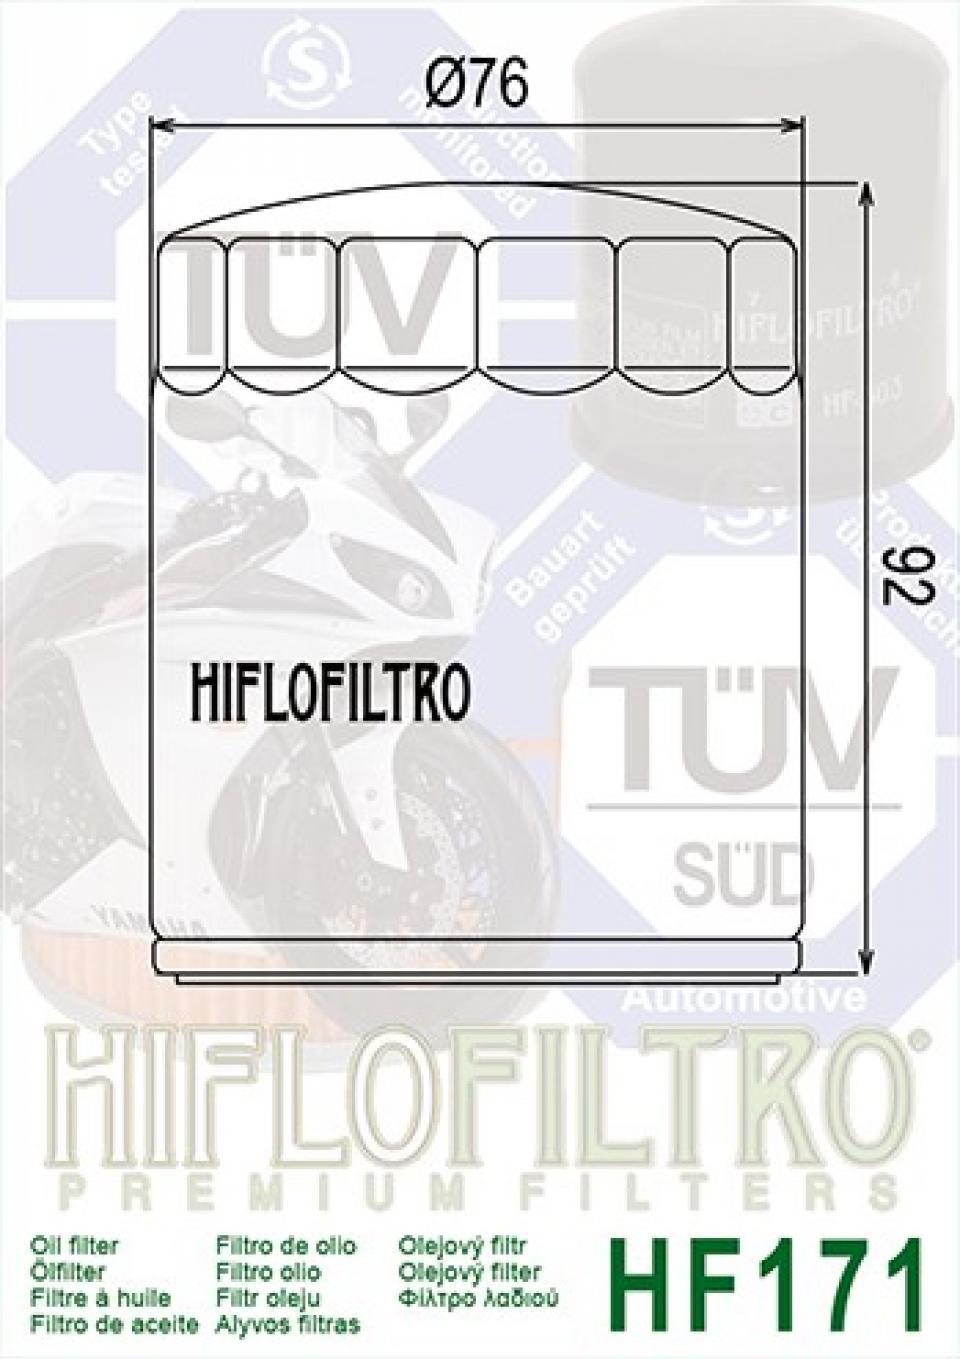 Filtre à huile Hiflo Filtro pour Moto Buell 1200 S1 1994-2002 HF171B Neuf